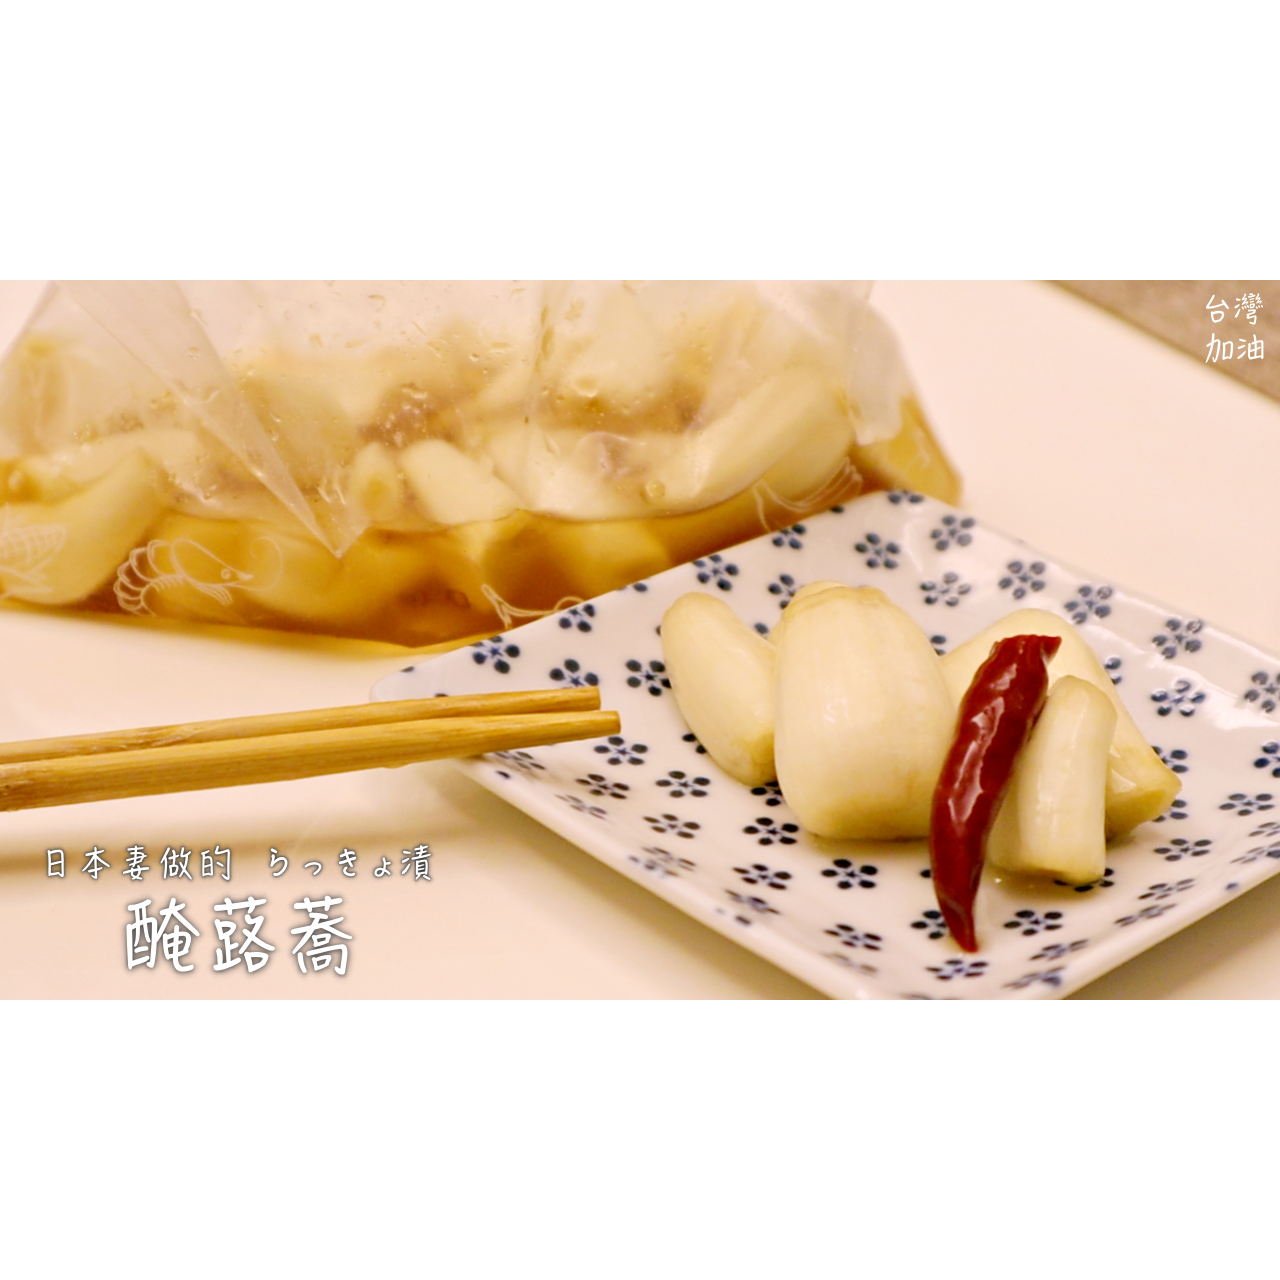 防疫自煮 利用密封袋做簡單醃蕗蕎by 日本妻の家庭日常in 台湾 愛料理